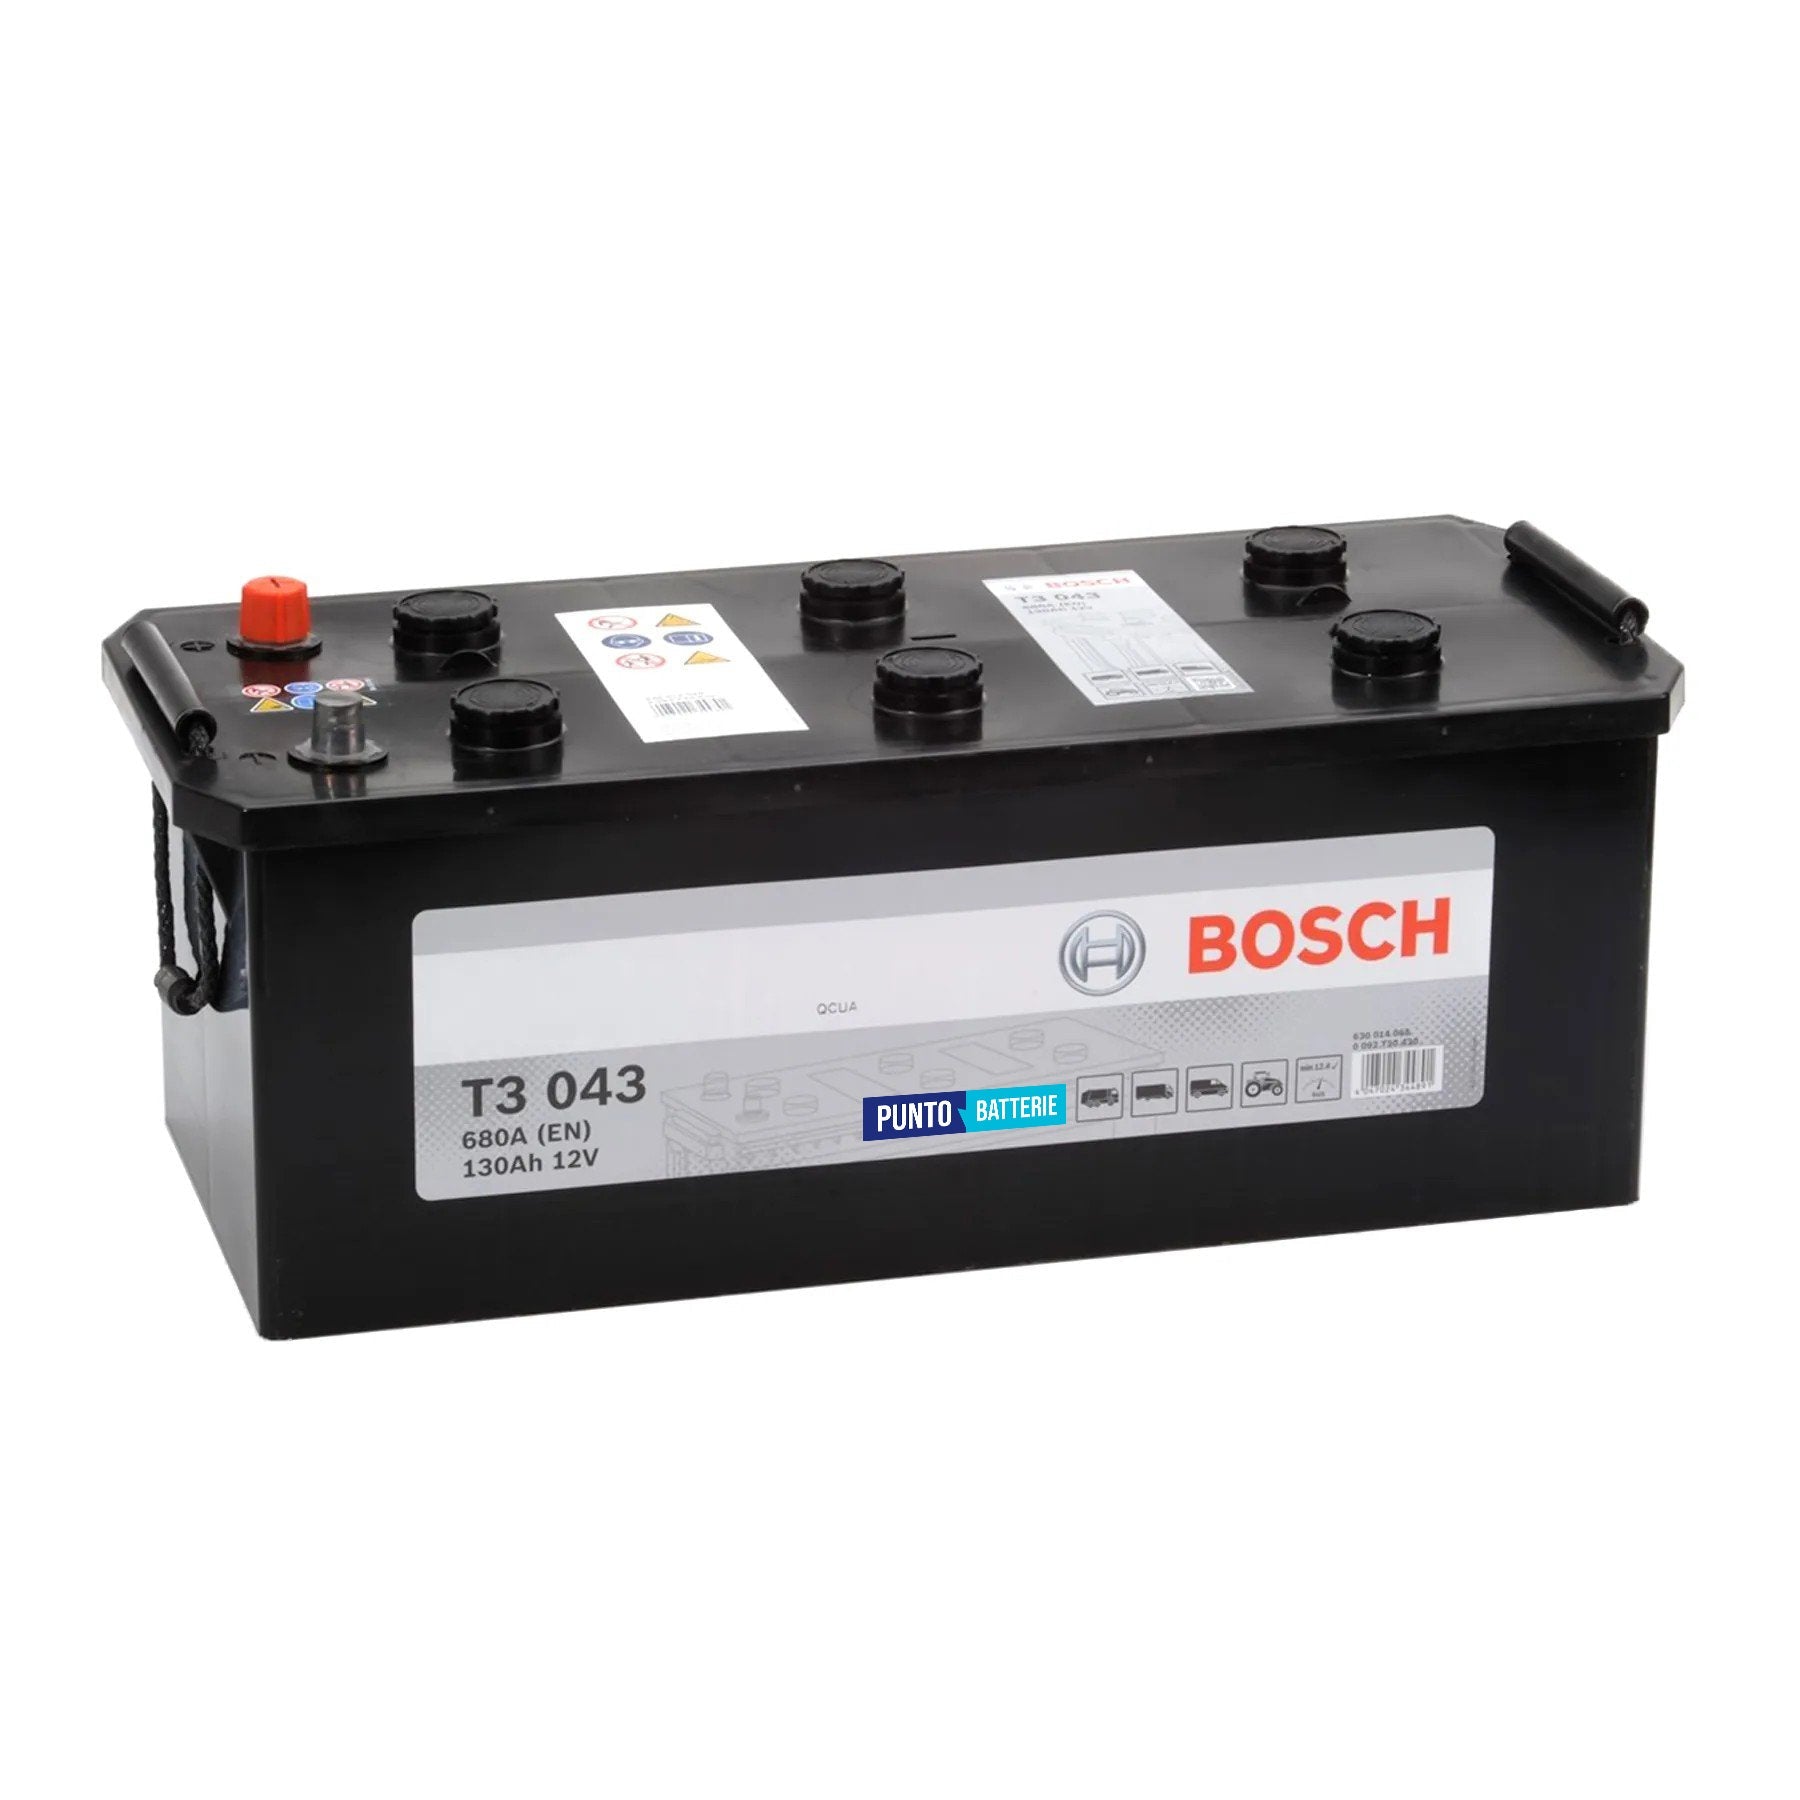 Batteria originale Bosch T3 T3043, dimensioni 514 x 218 x 205, polo positivo a sinistra, 12 volt, 130 amperora, 680 ampere. Batteria per camion e veicoli pesanti.